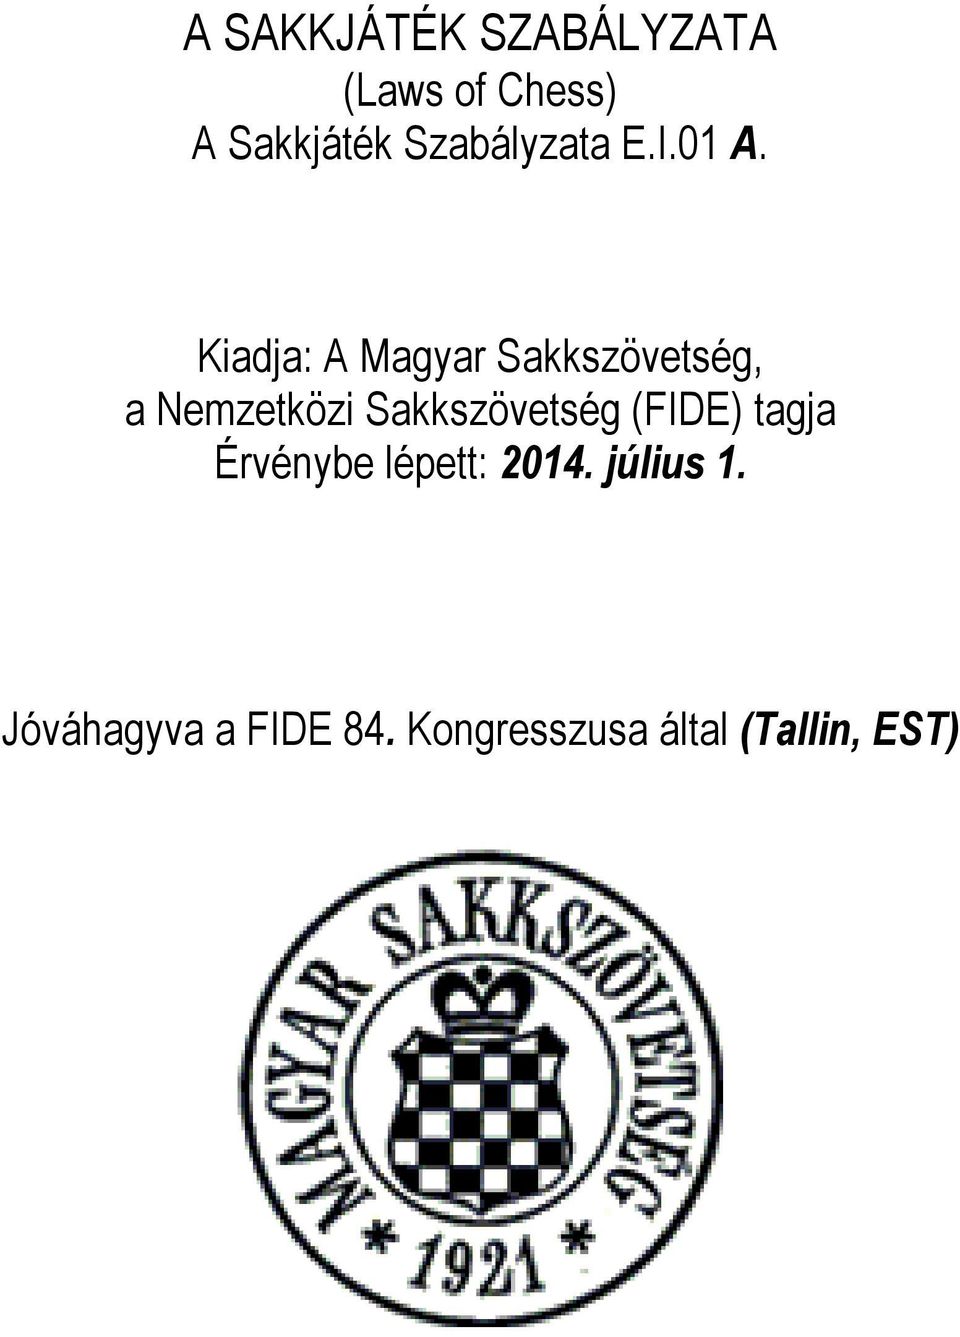 Kiadja: A Magyar Sakkszövetség, a Nemzetközi Sakkszövetség